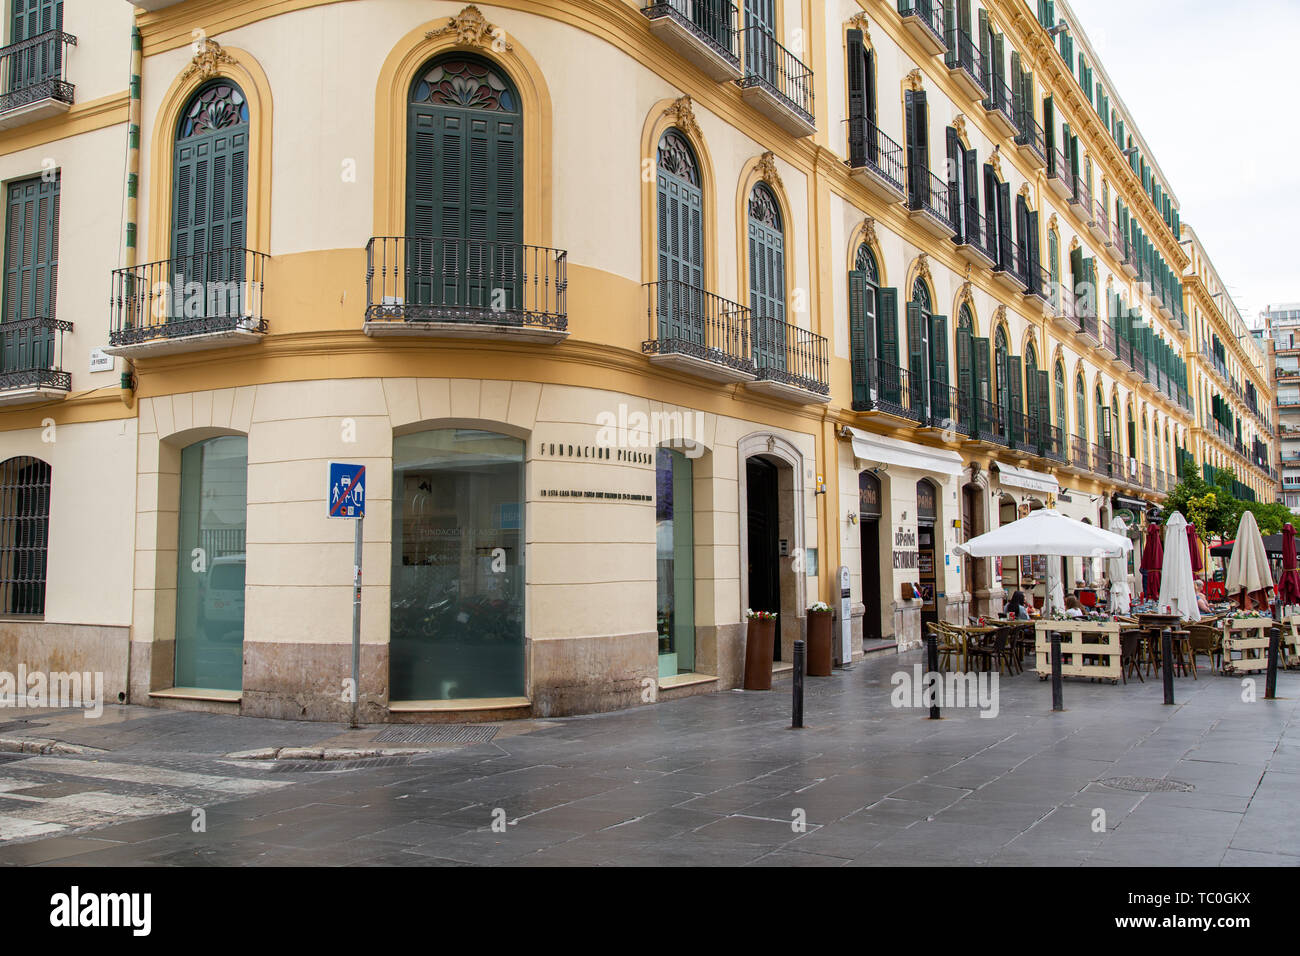 Lieu de naissance de Pablo Picasso à Malaga, Espagne Banque D'Images